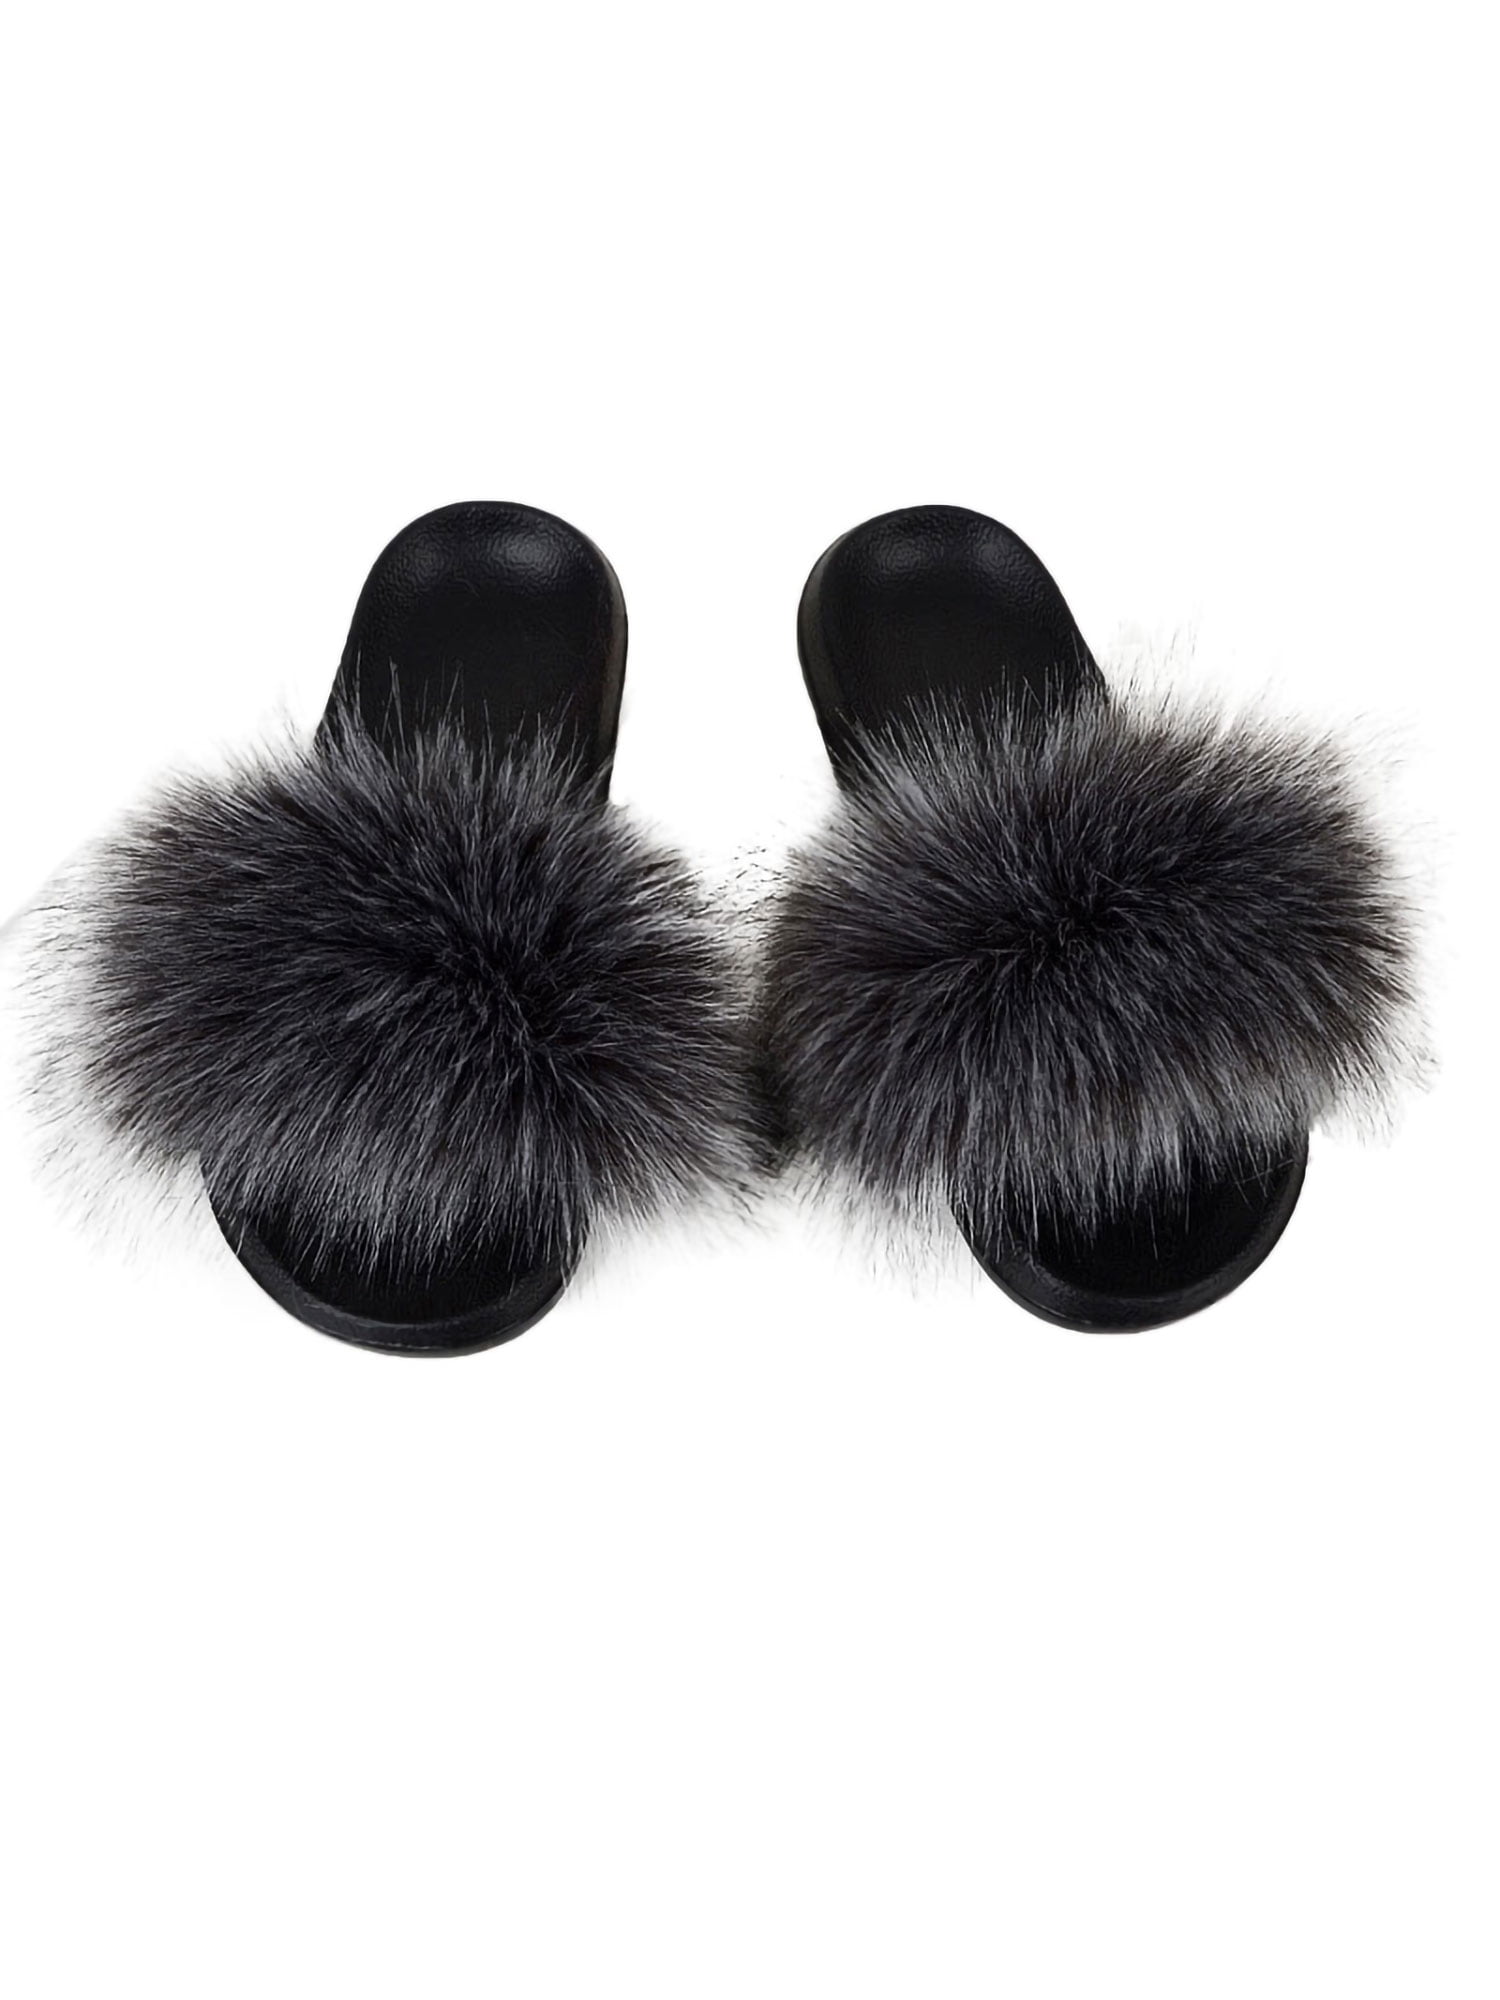 Customizable Color Real Fox Fur Slippers Flip Flops Slip On Slides Shoes Non-Slip Fluffy Slippers Shoes Women,PVC Light 